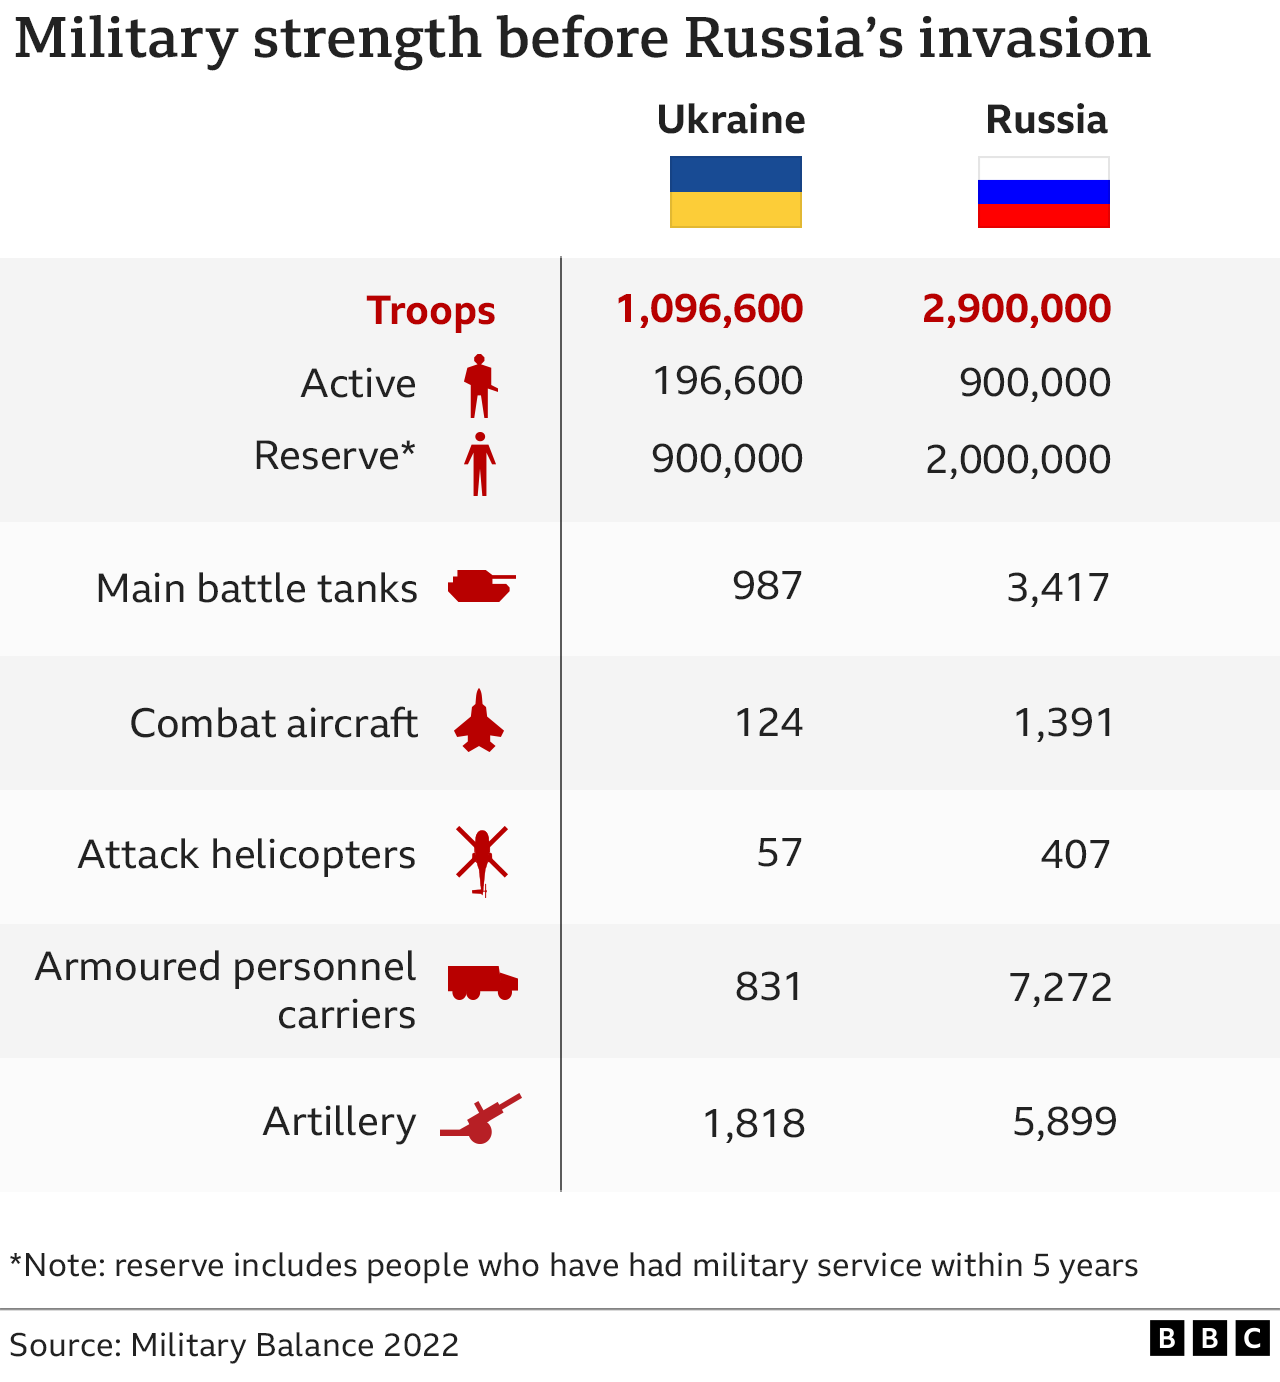 侵略战争前俄罗斯侵略乌克兰军事实力对比。军队人数 （现役和预备役*）、主战坦克、作战飞机、武装直升机、装甲运兵车、火炮。注*：预备役包括5年以内退役人员。来源：《2022年军事平衡》报告(photo:BBC)